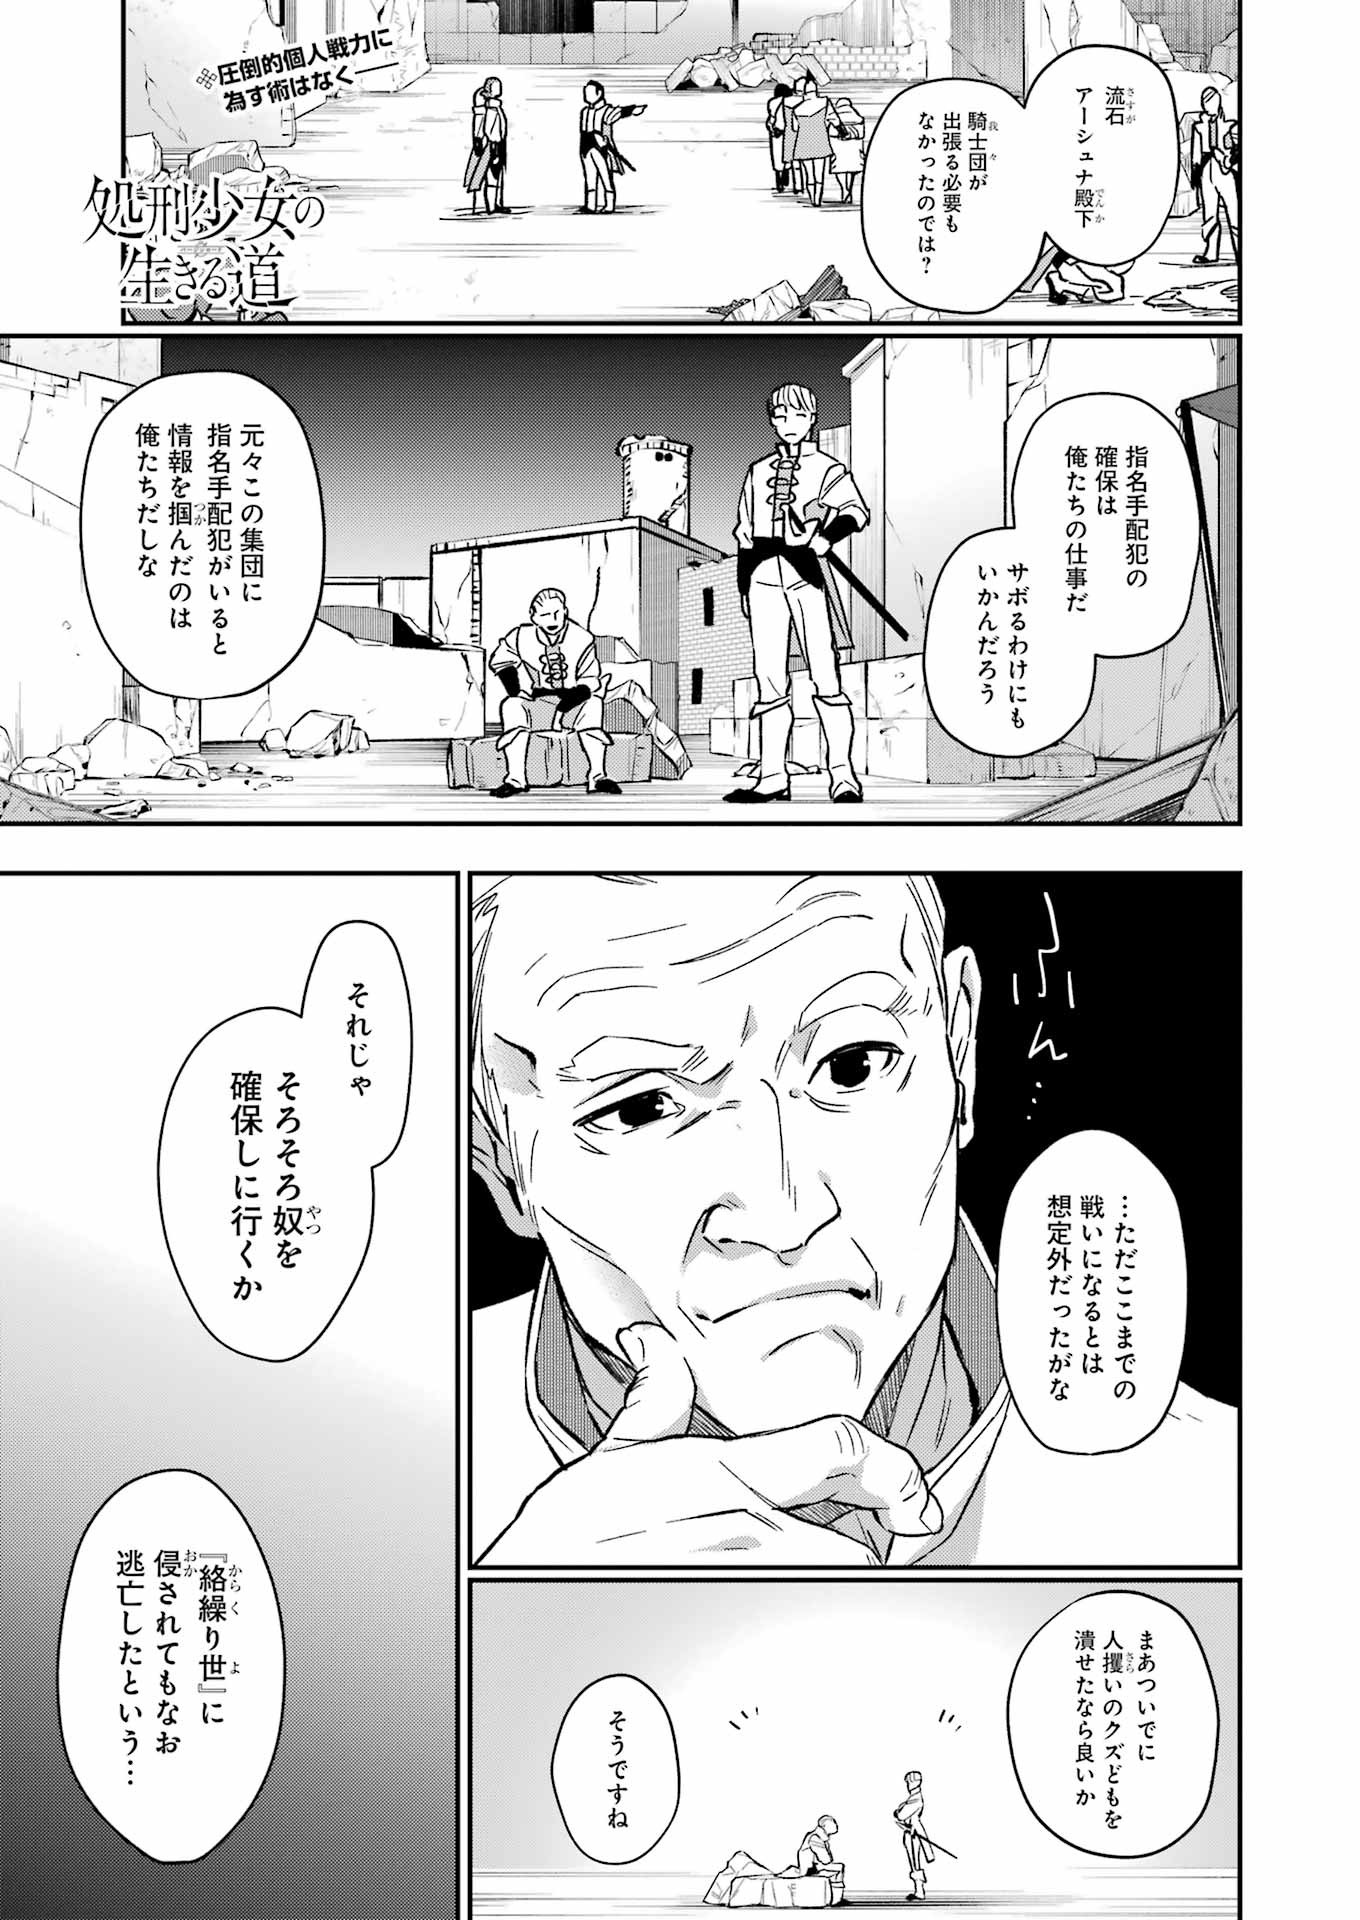 Shokei Shoujo no Ikiru Michi - Chapter 42 - Page 1